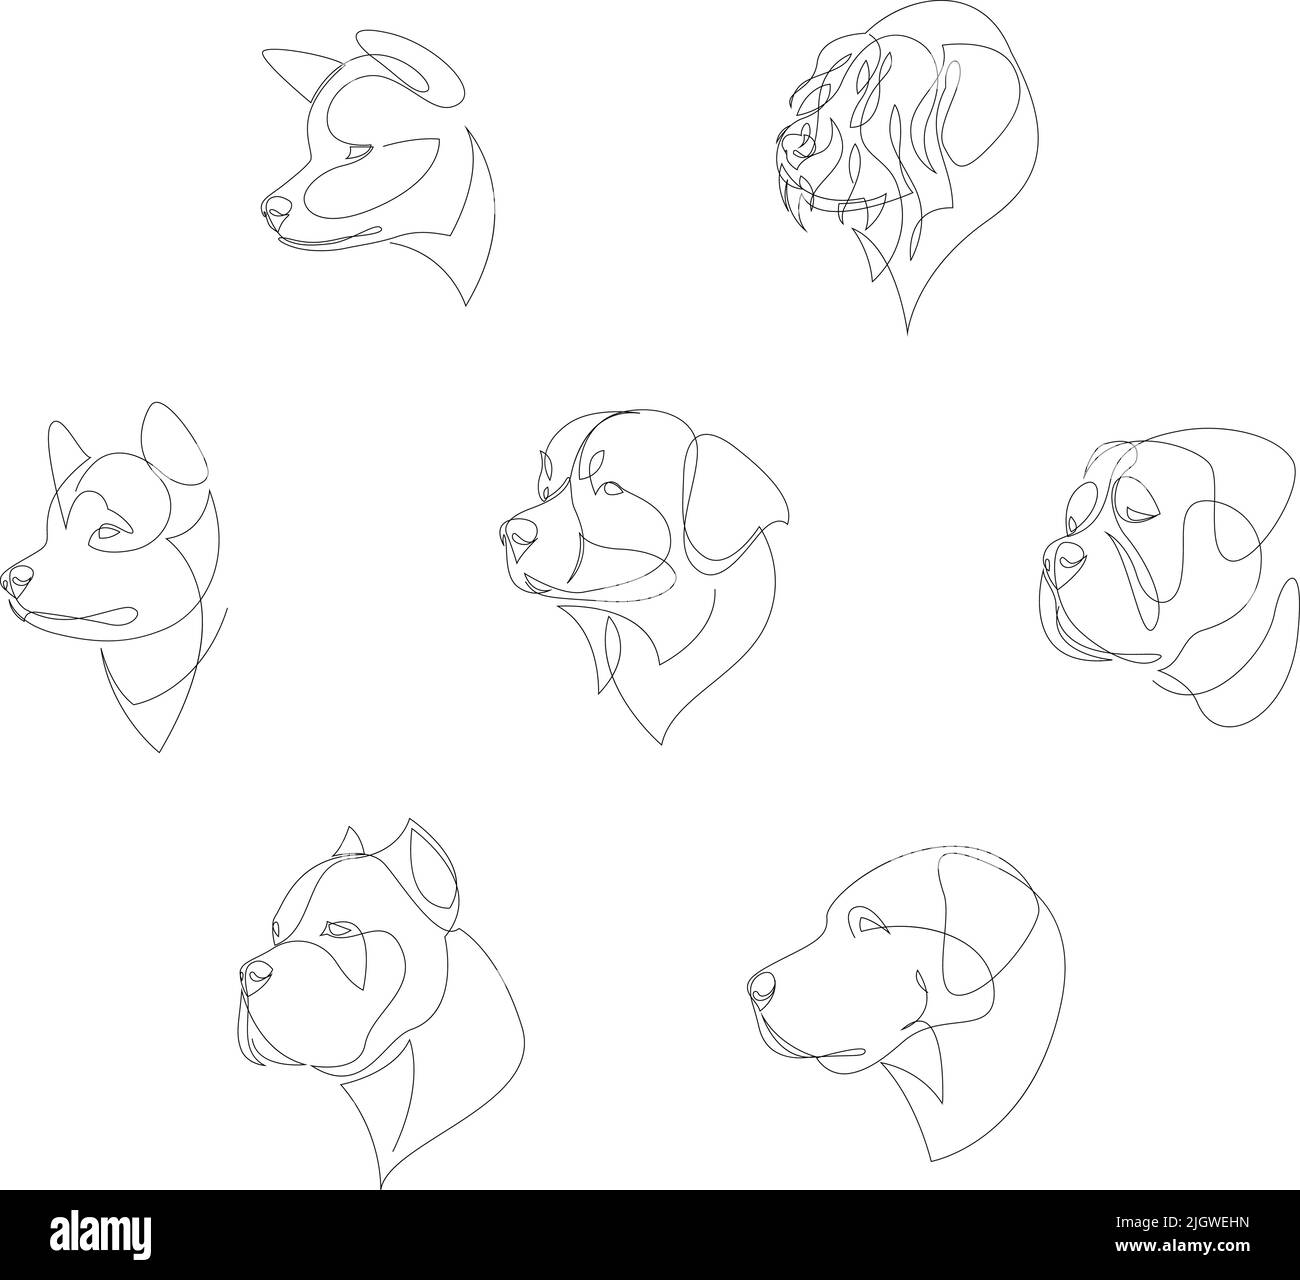 Hunderassen in minimalistischem Stil gezeichnet. Hunde in einer Reihe. Vektorgrafik Stock Vektor